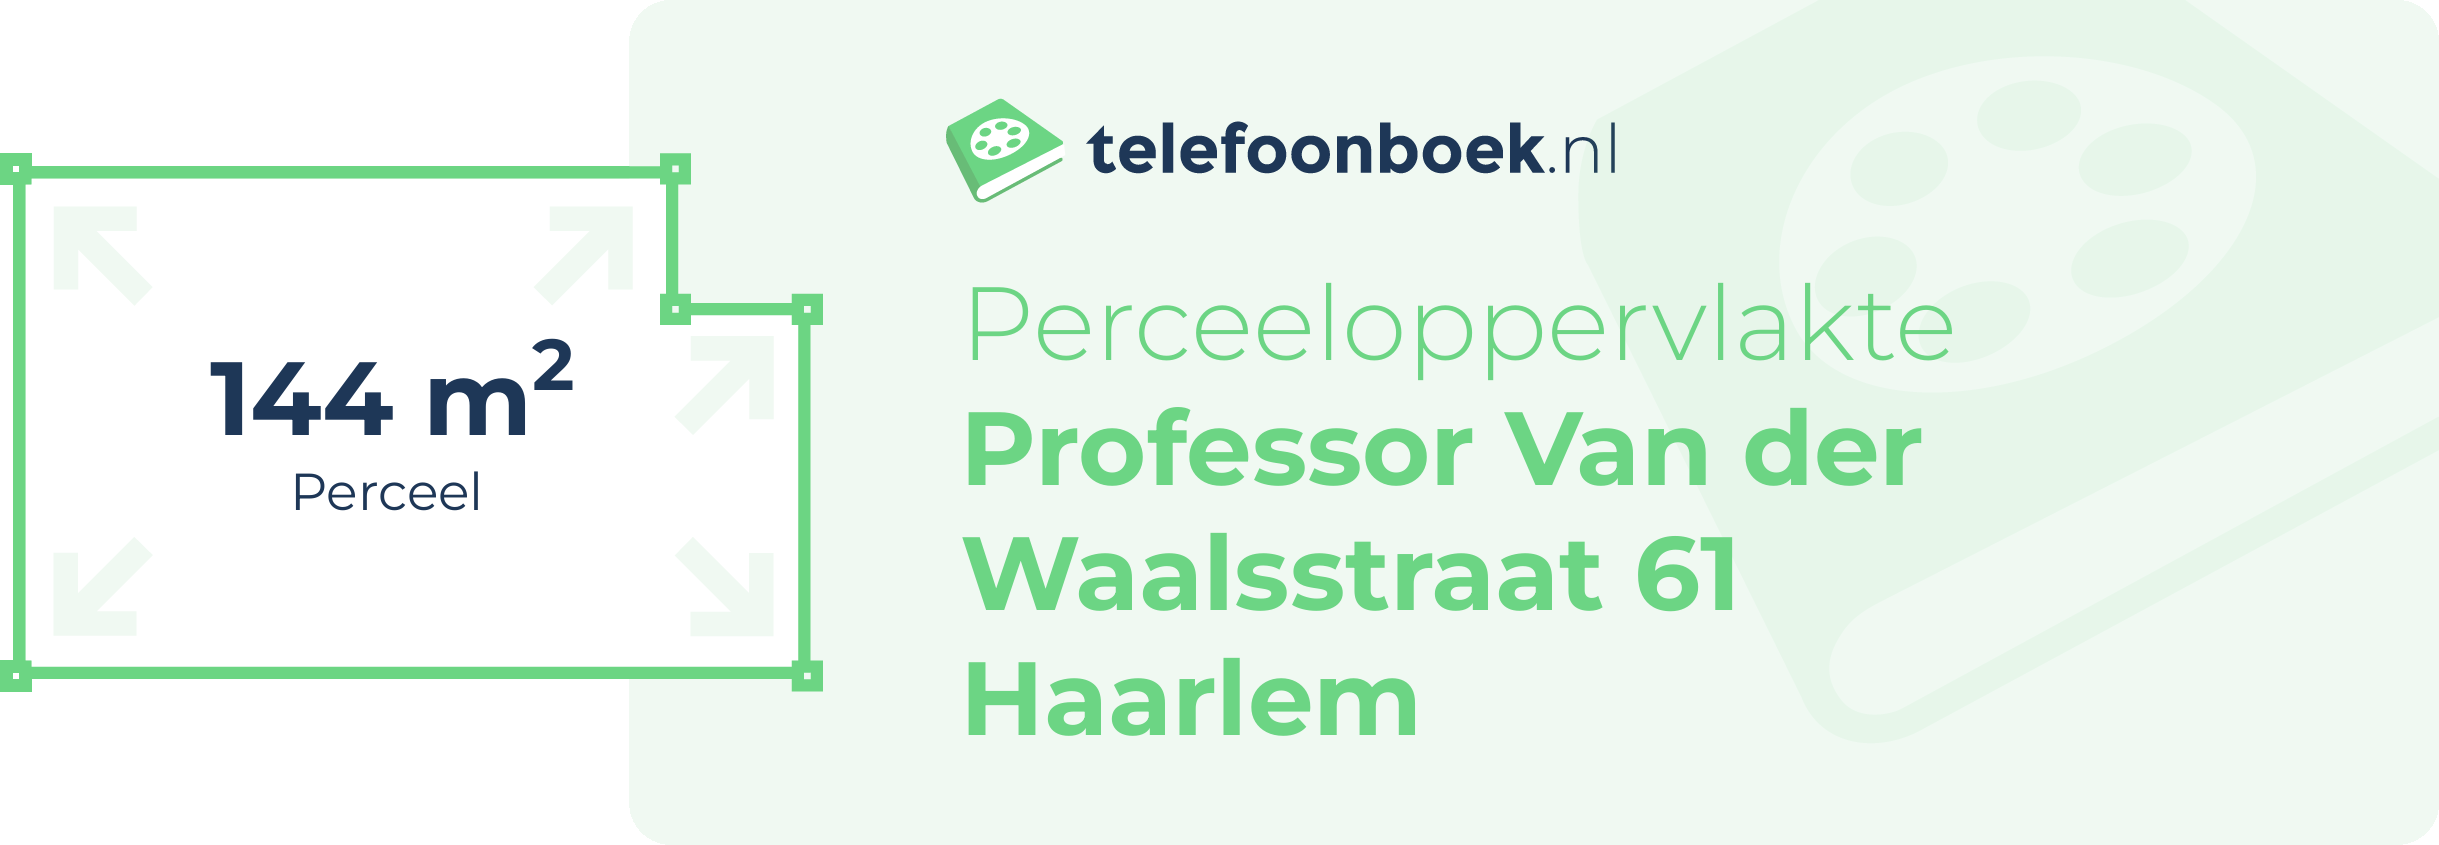 Perceeloppervlakte Professor Van Der Waalsstraat 61 Haarlem